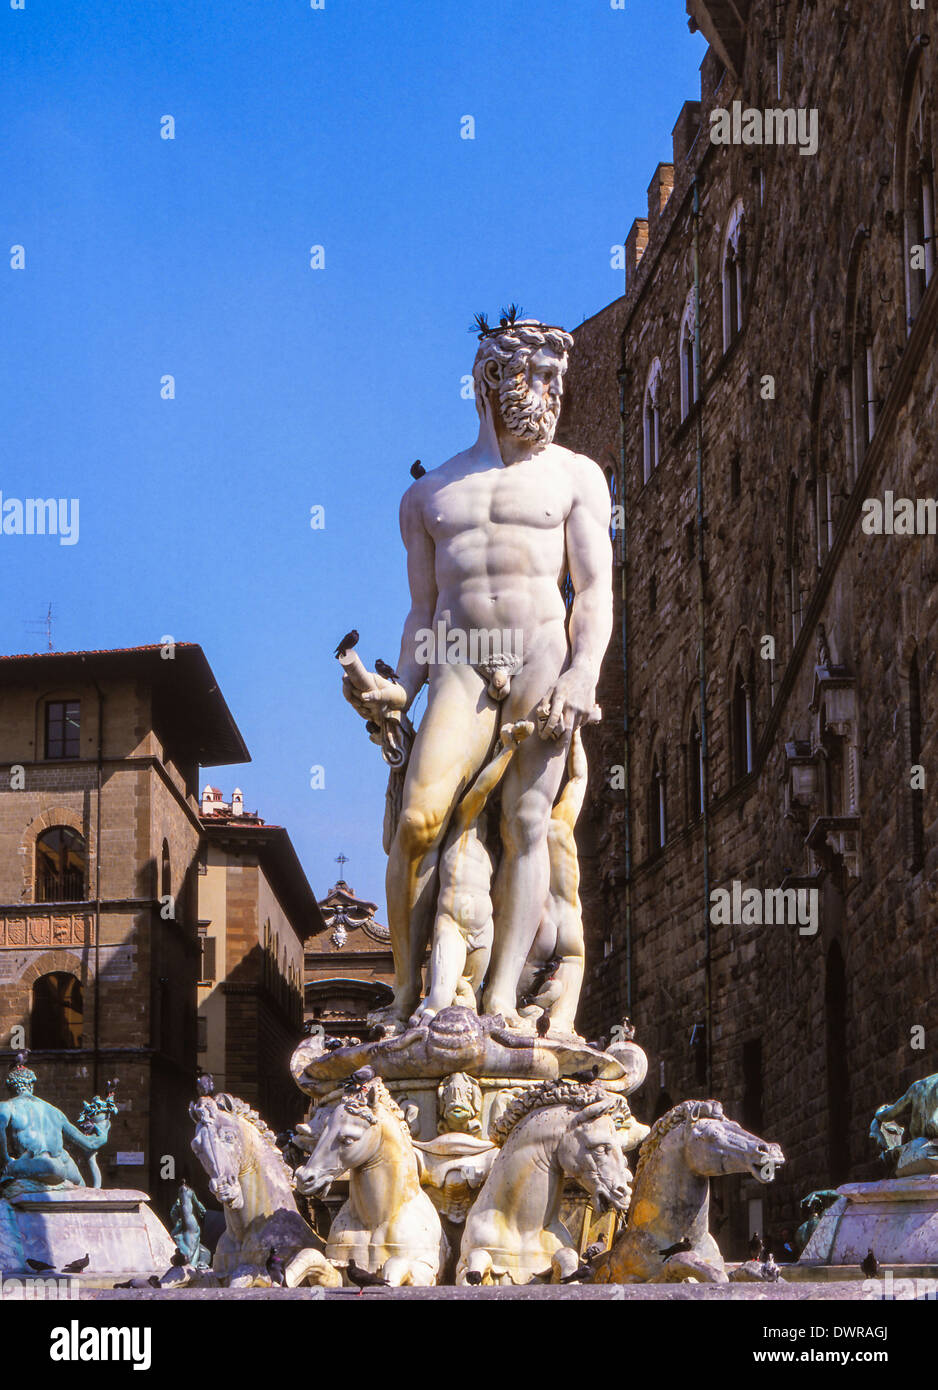 The Fountain of Neptune by Bartolomeo Ammannati (1575), Piazza della Signoria in Florence, Italy Stock Photo